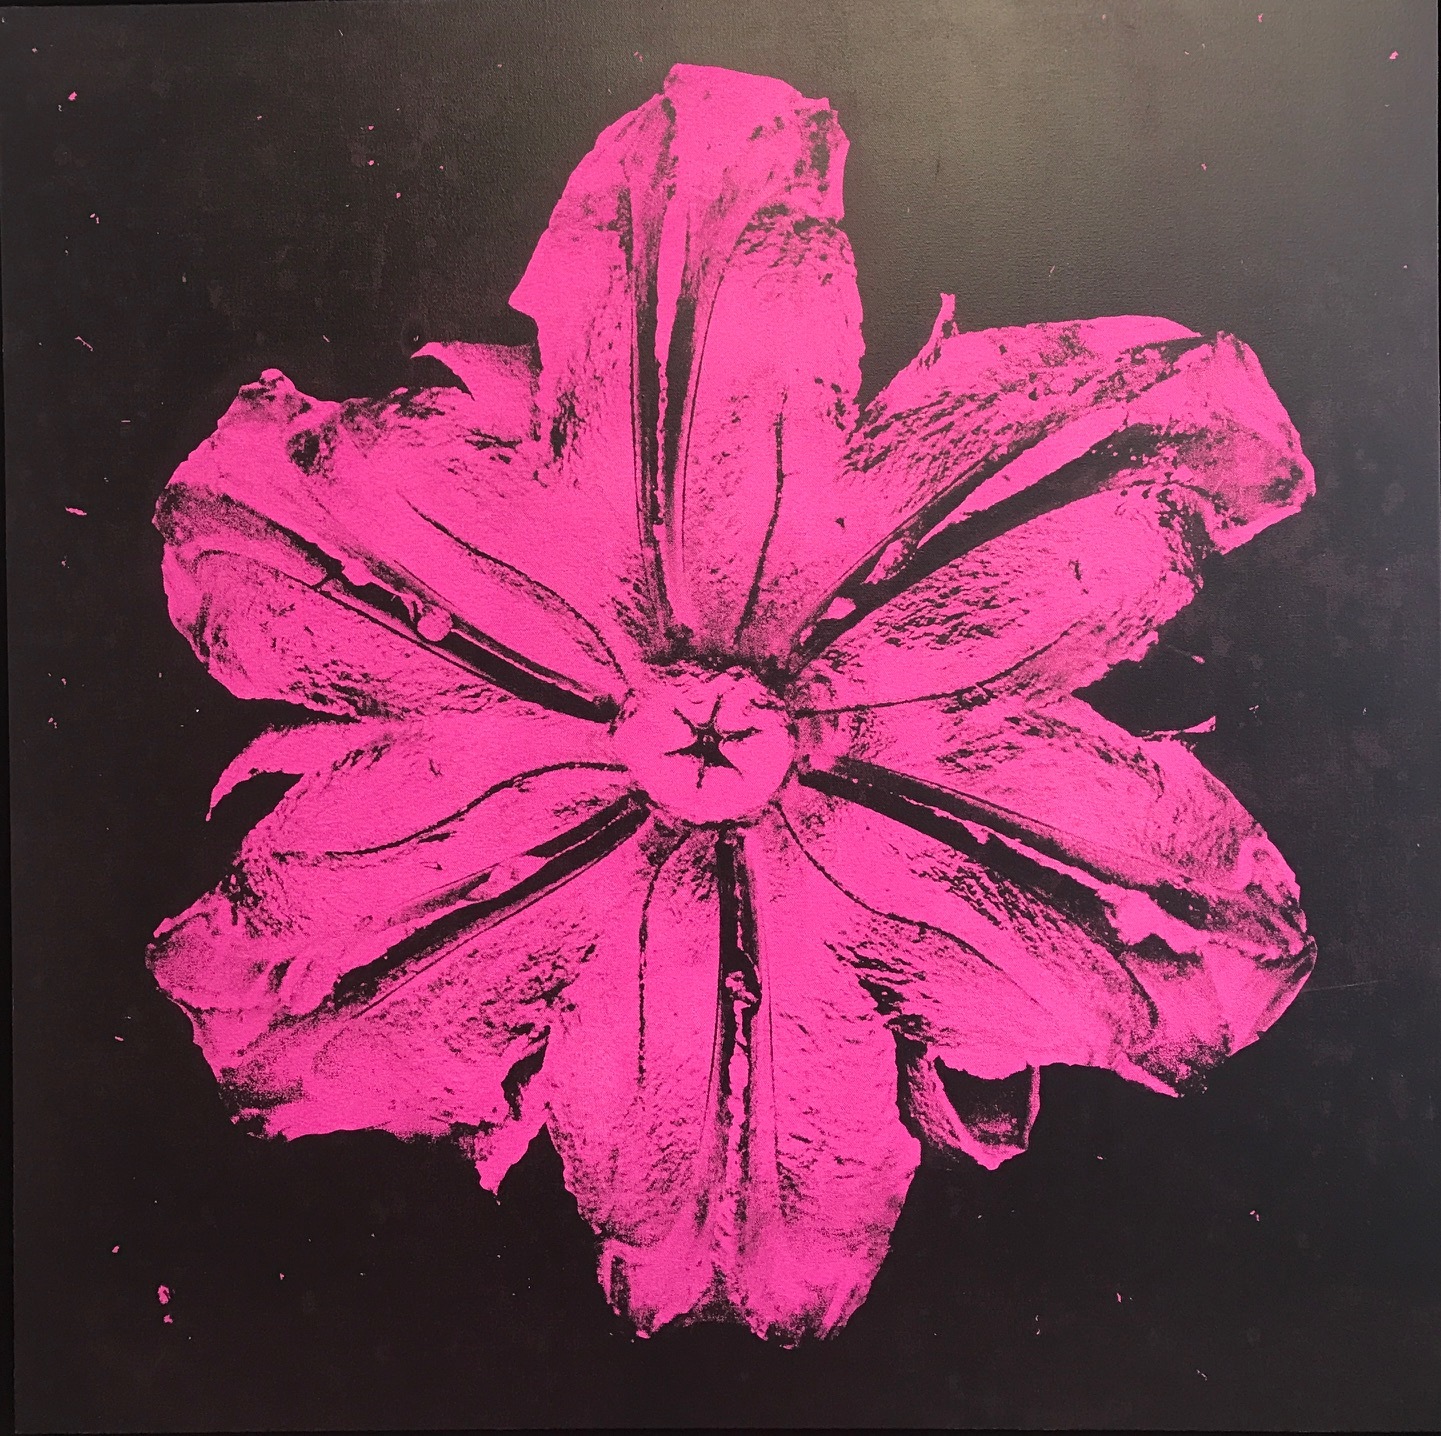 Rubem Robierb, Power Flower N-3 (Pink on Black), 2016